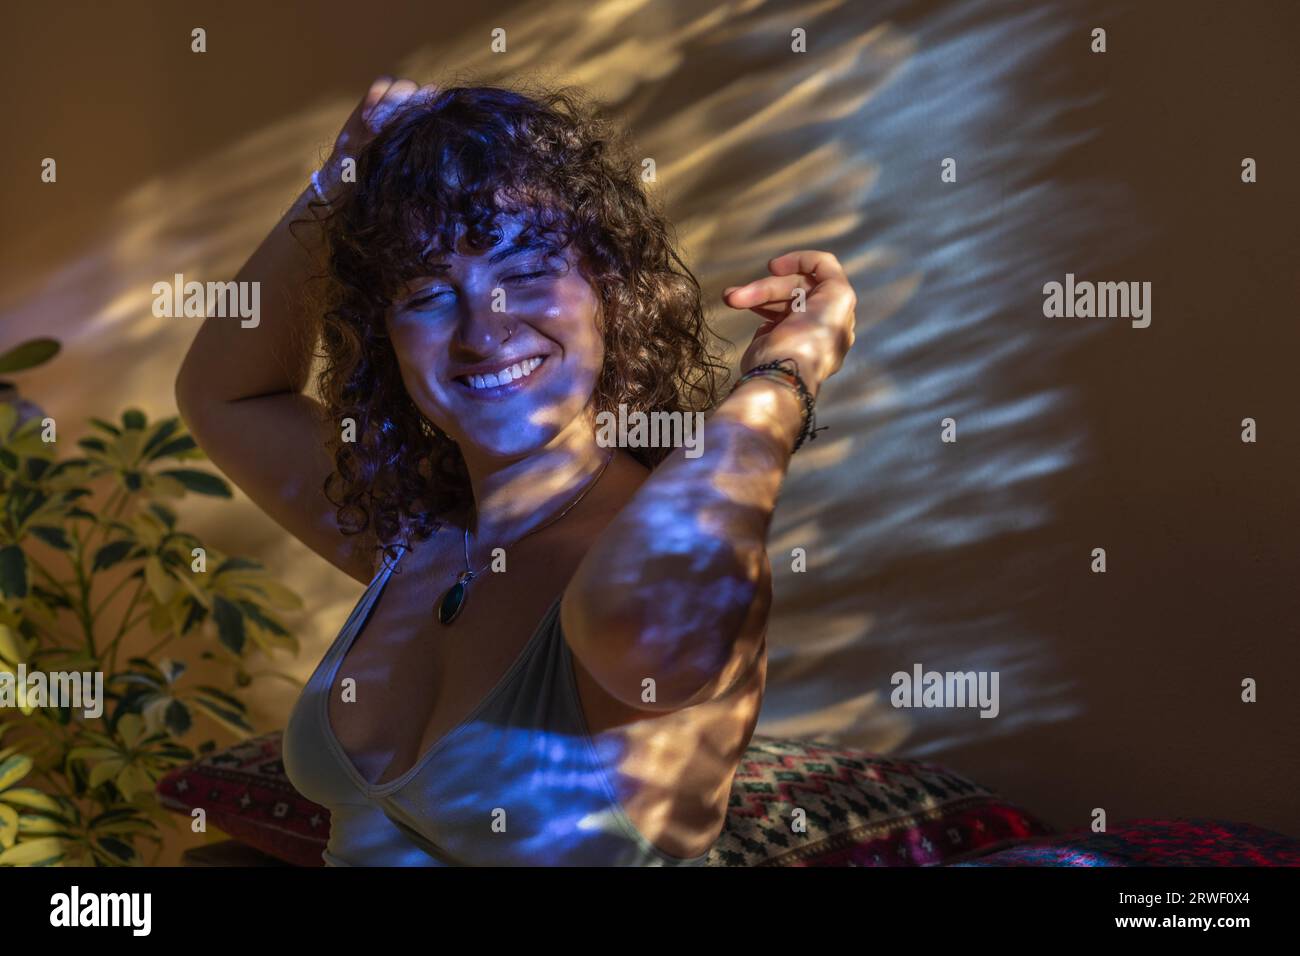 Porträt einer lächelnden jungen Frau mit lockigen dunklen Haaren, die ihre Arme in die Luft heben, als ob sie in gebrochenem Licht tanzt Stockfoto